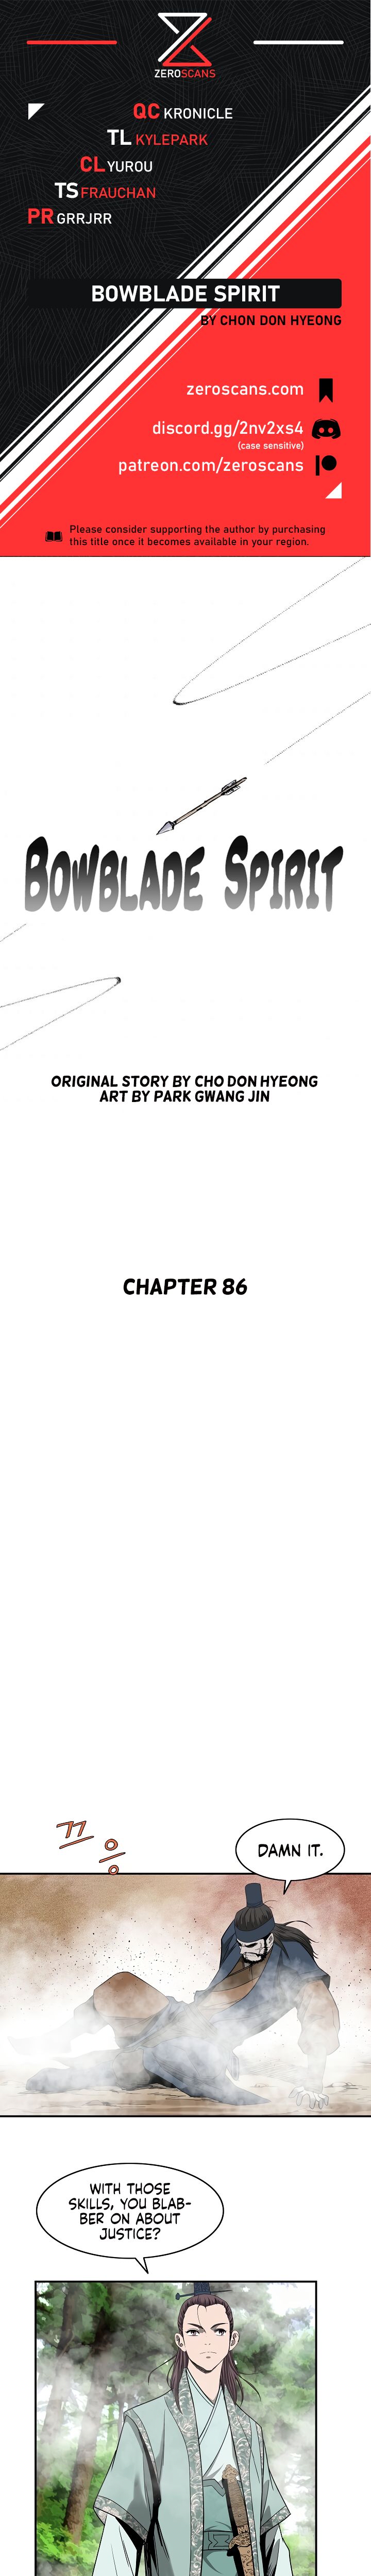 Bowblade Spirit - Chapter 8055 - Image 1